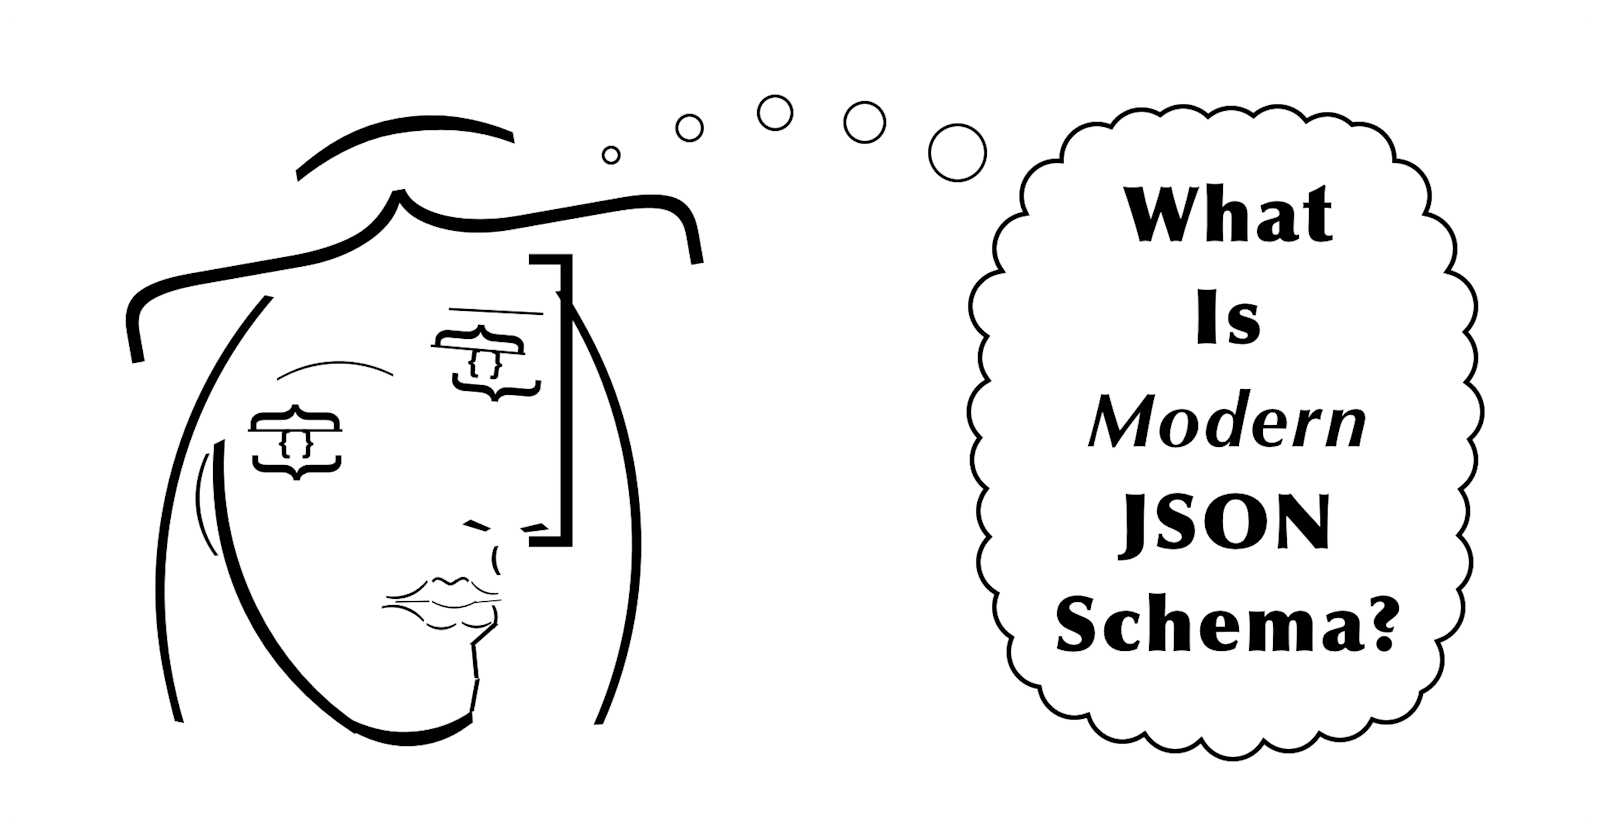 What is "Modern" JSON Schema?